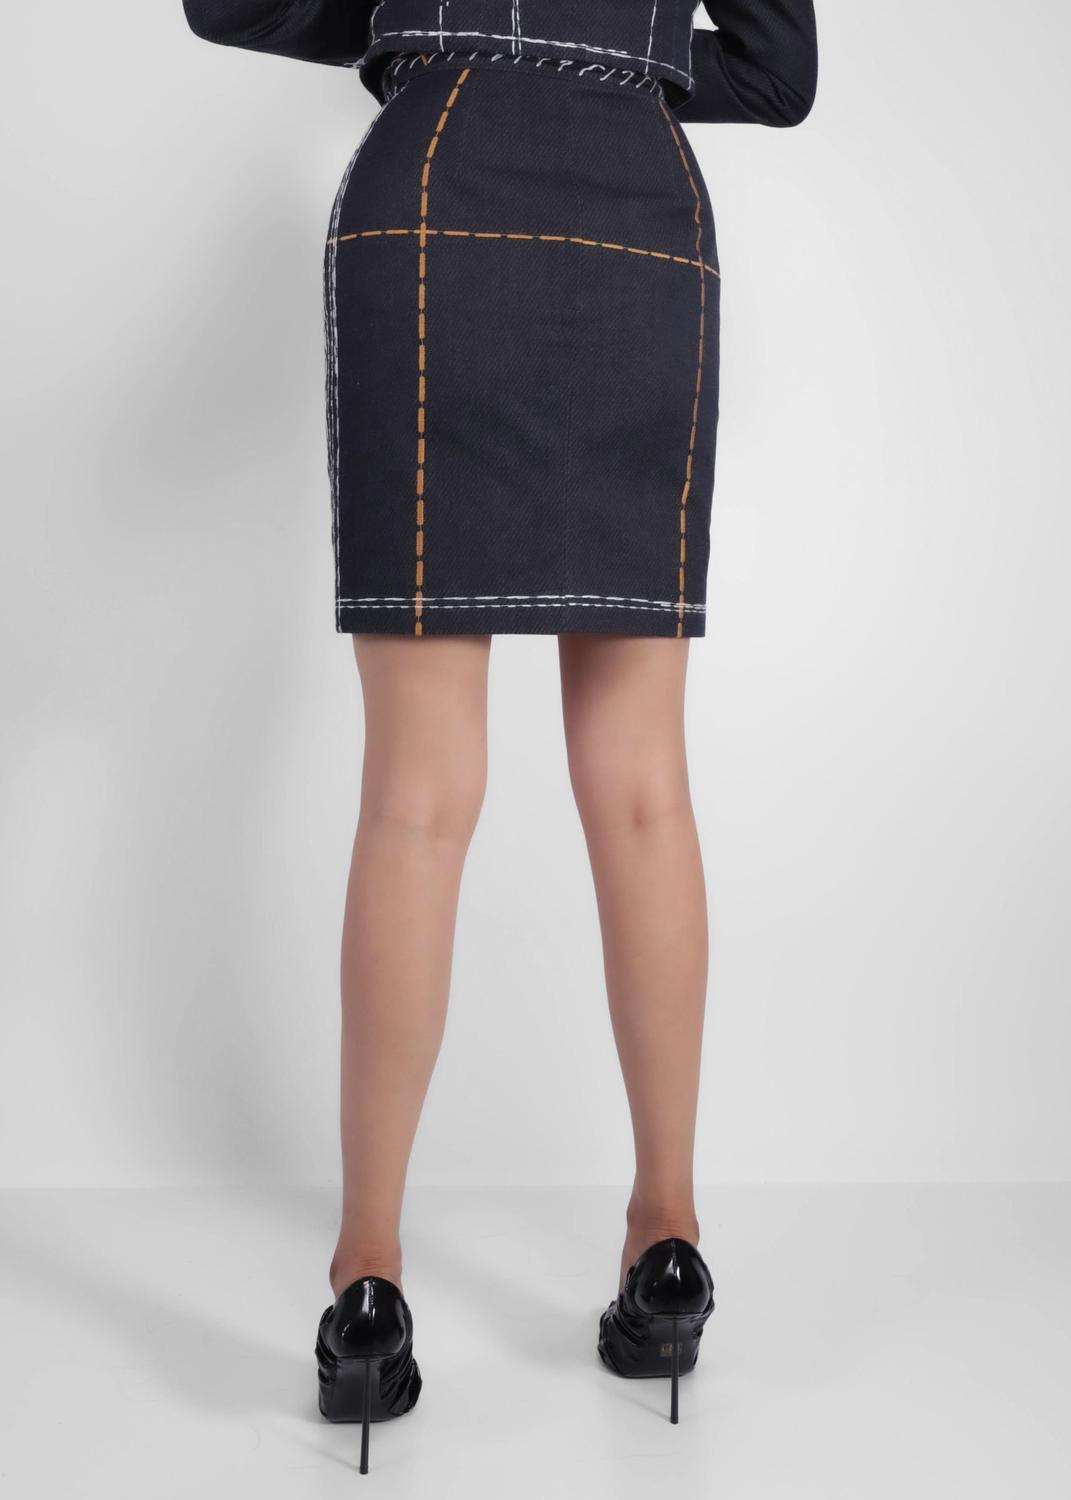 Moschino falda con costura en contraste MSC-A0109